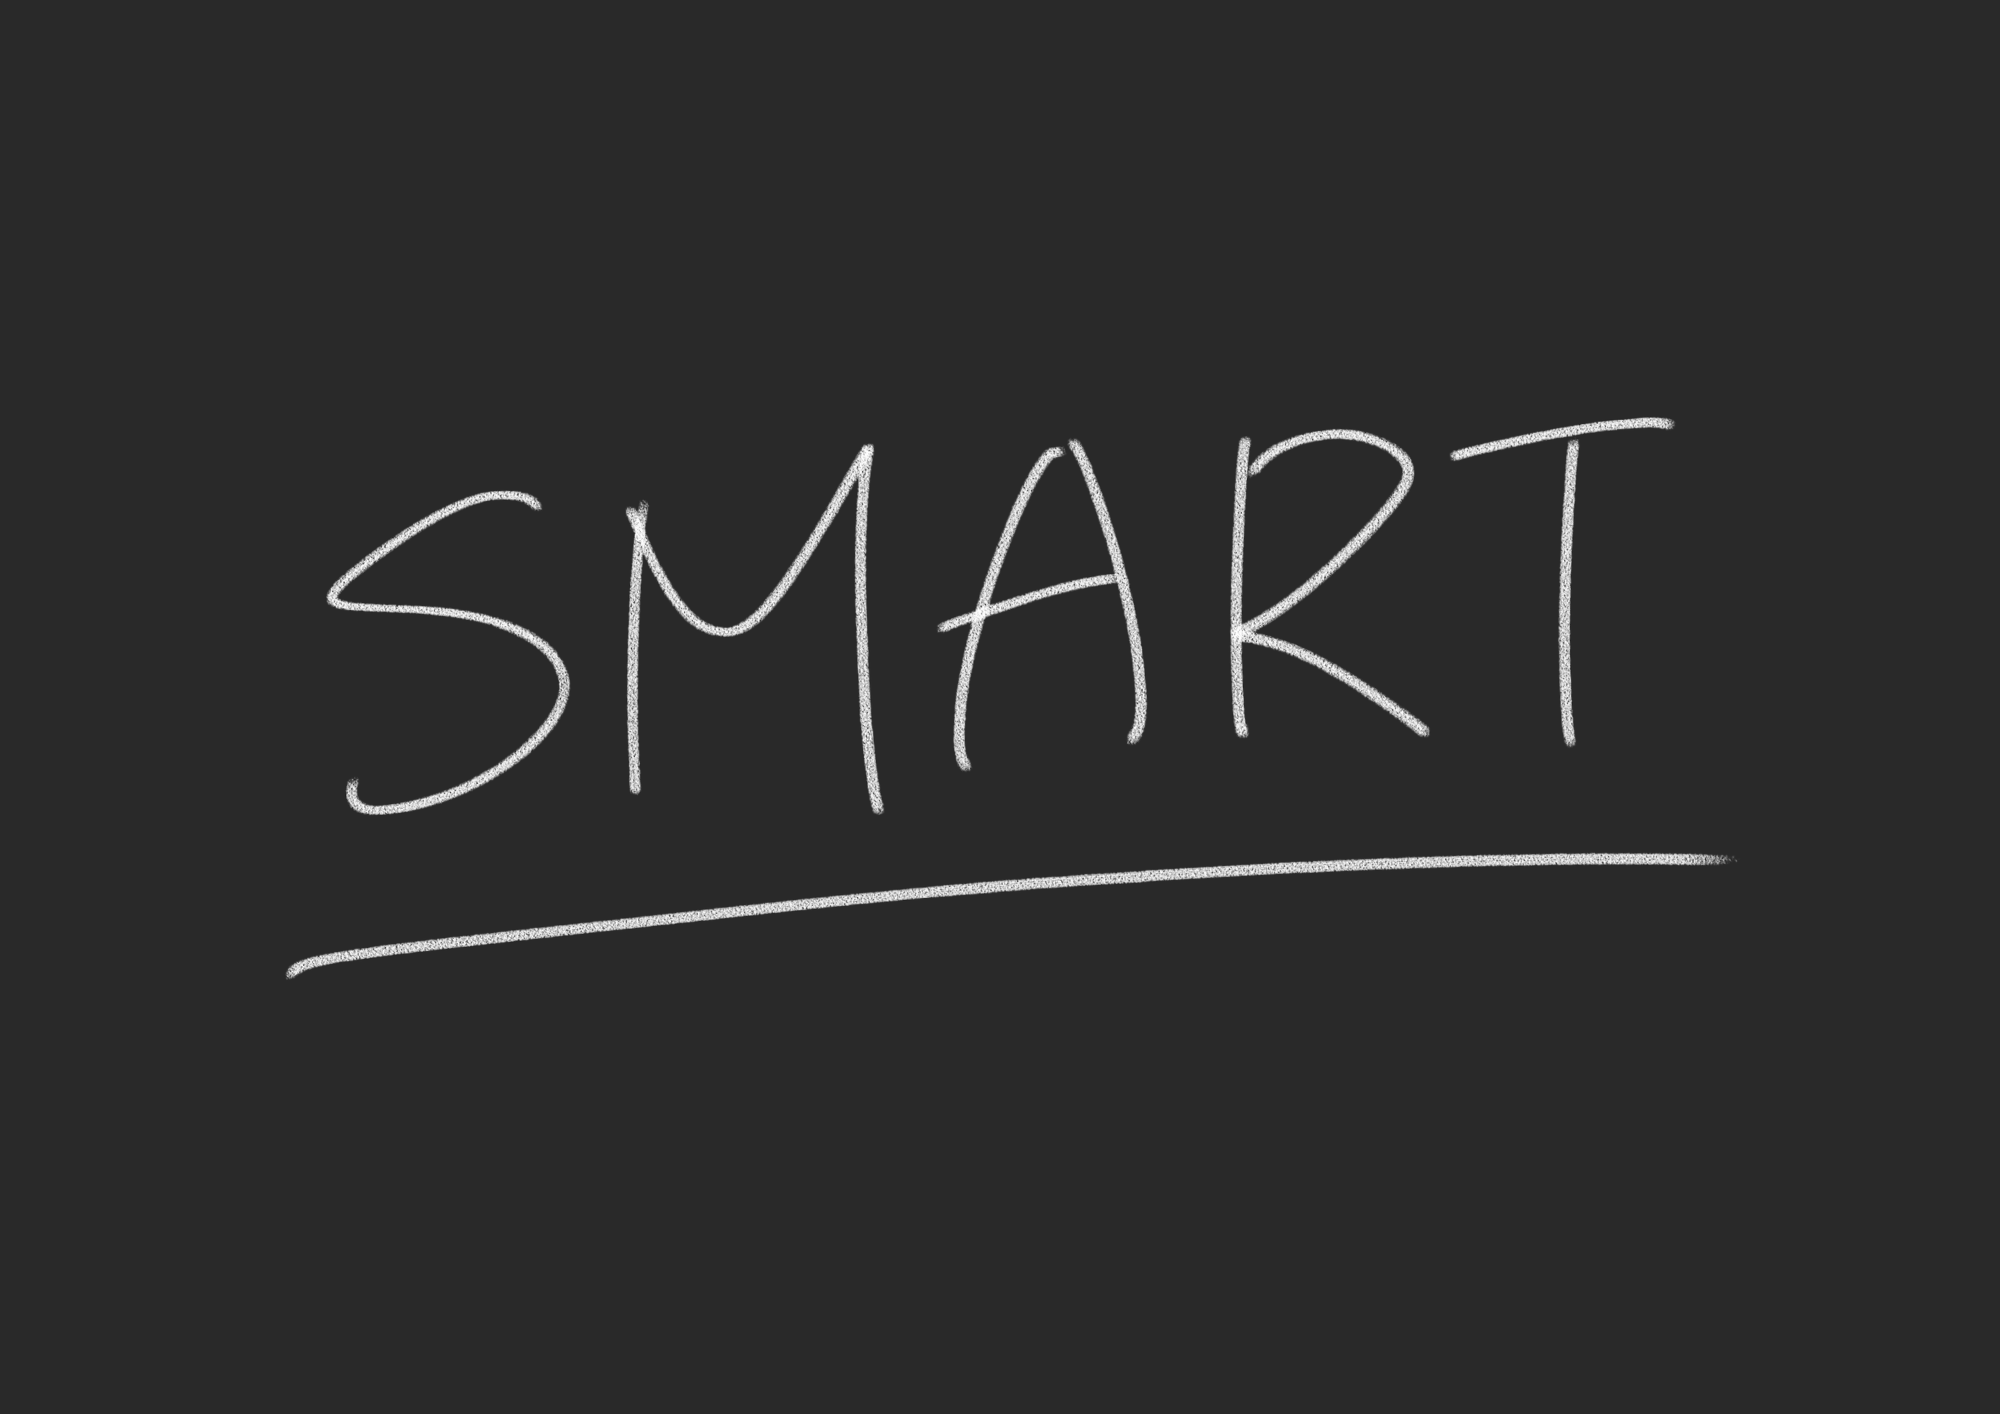 Schriftzug "SMART" mit weisser Schrift auf schwarzem Hintergrund.